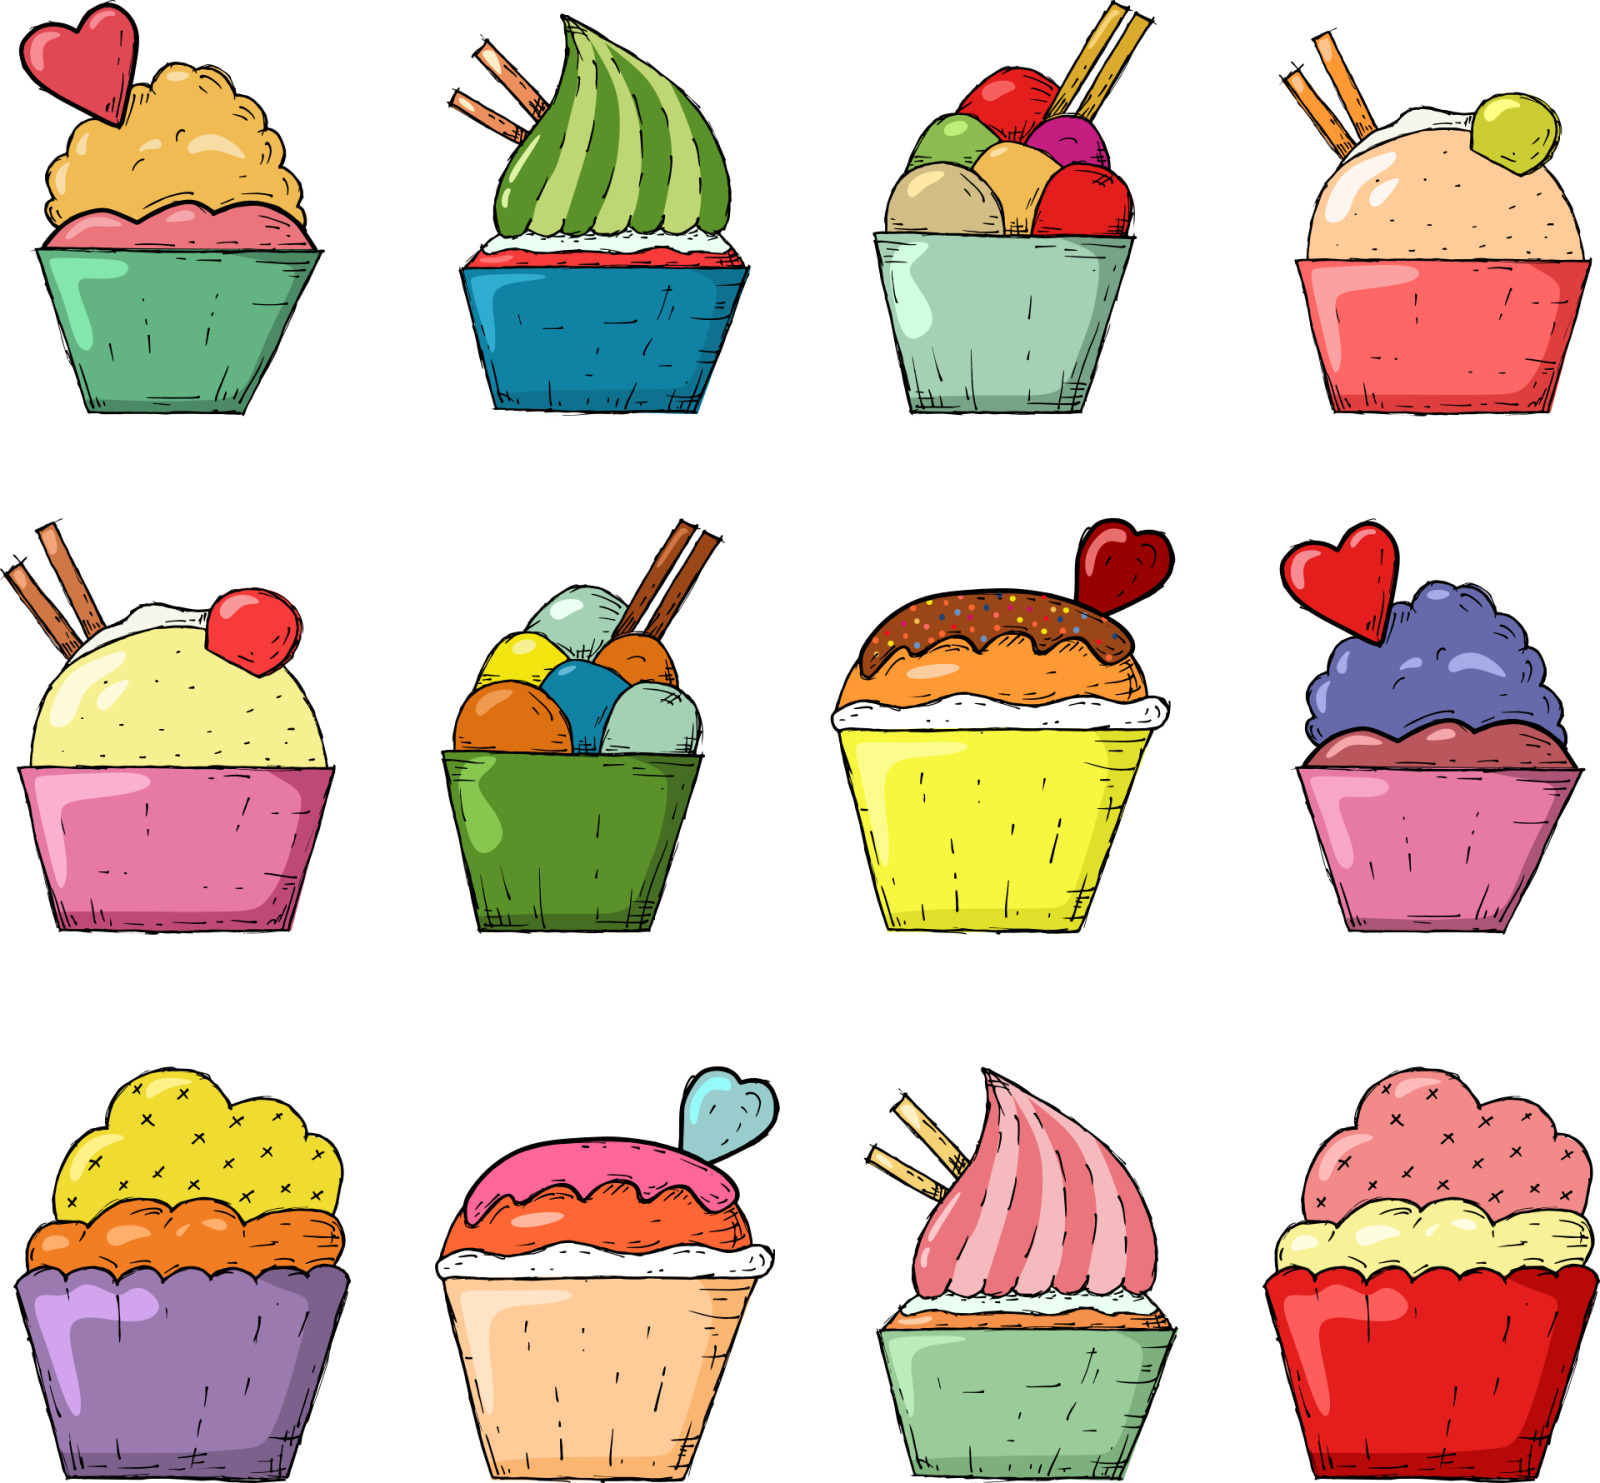 Yummy Cupcakes - Original image